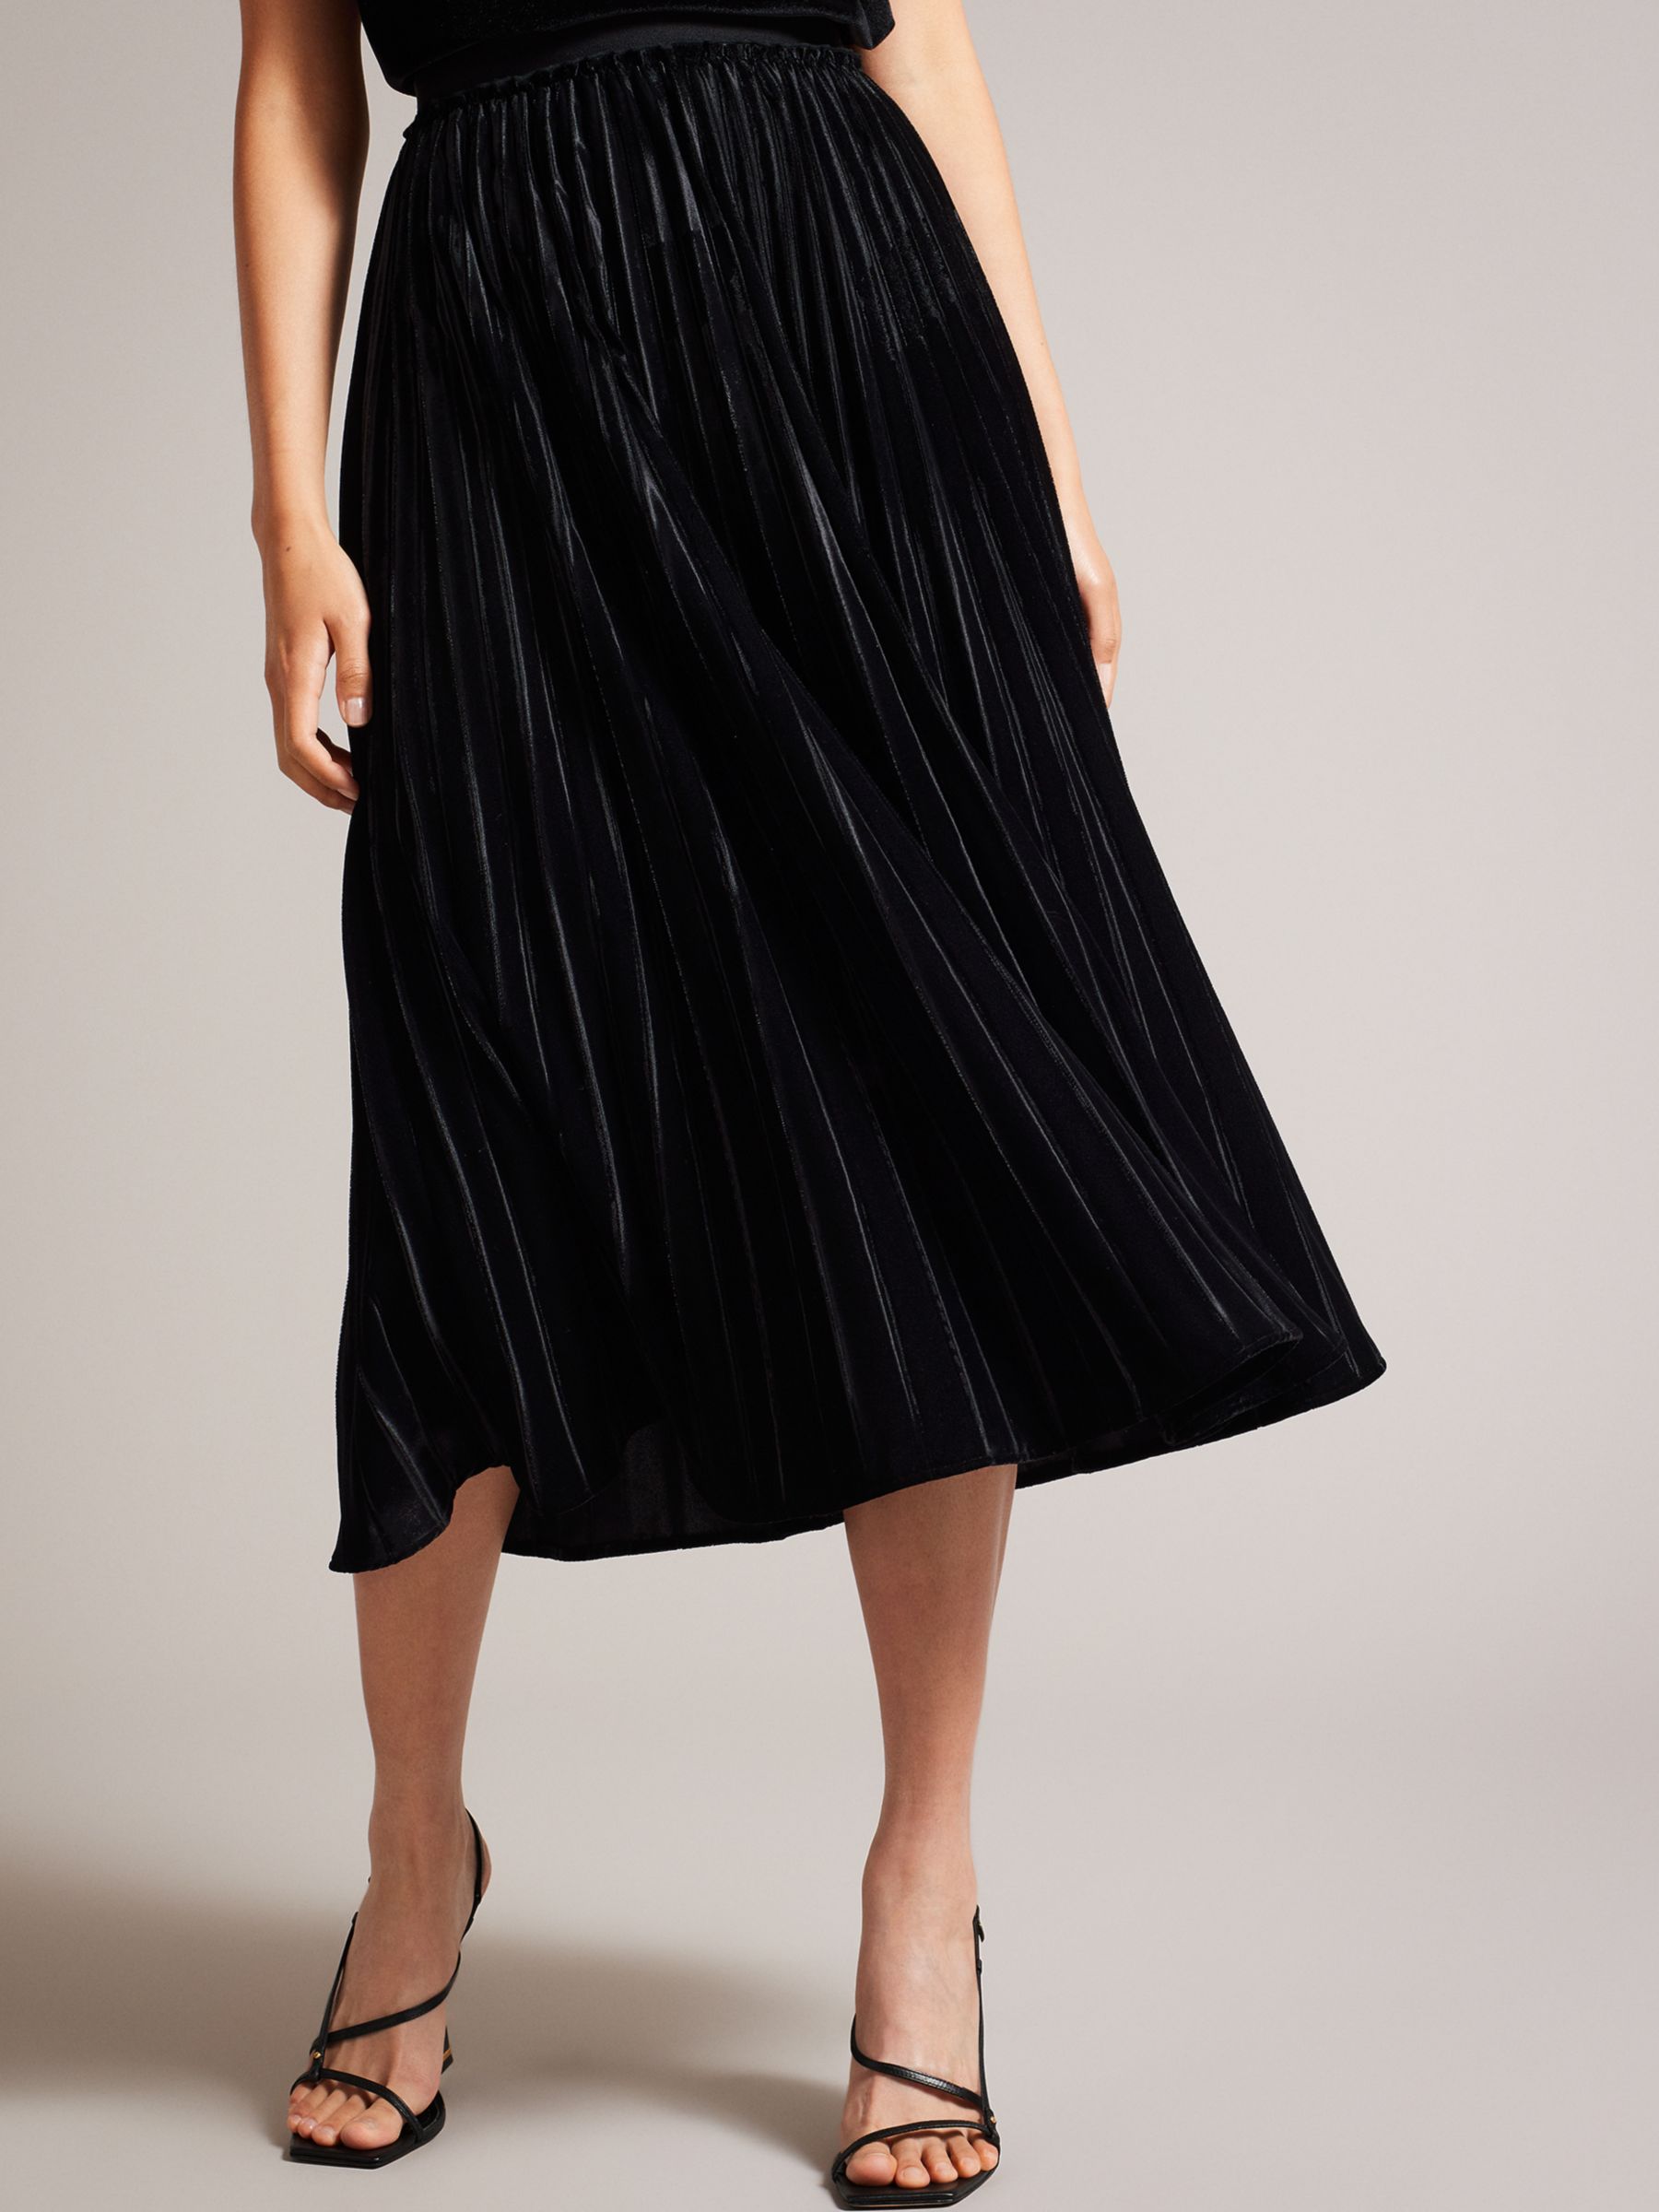 Ted Baker Gjill Pleated Velvet Midi Skirt, Black at John Lewis & Partners